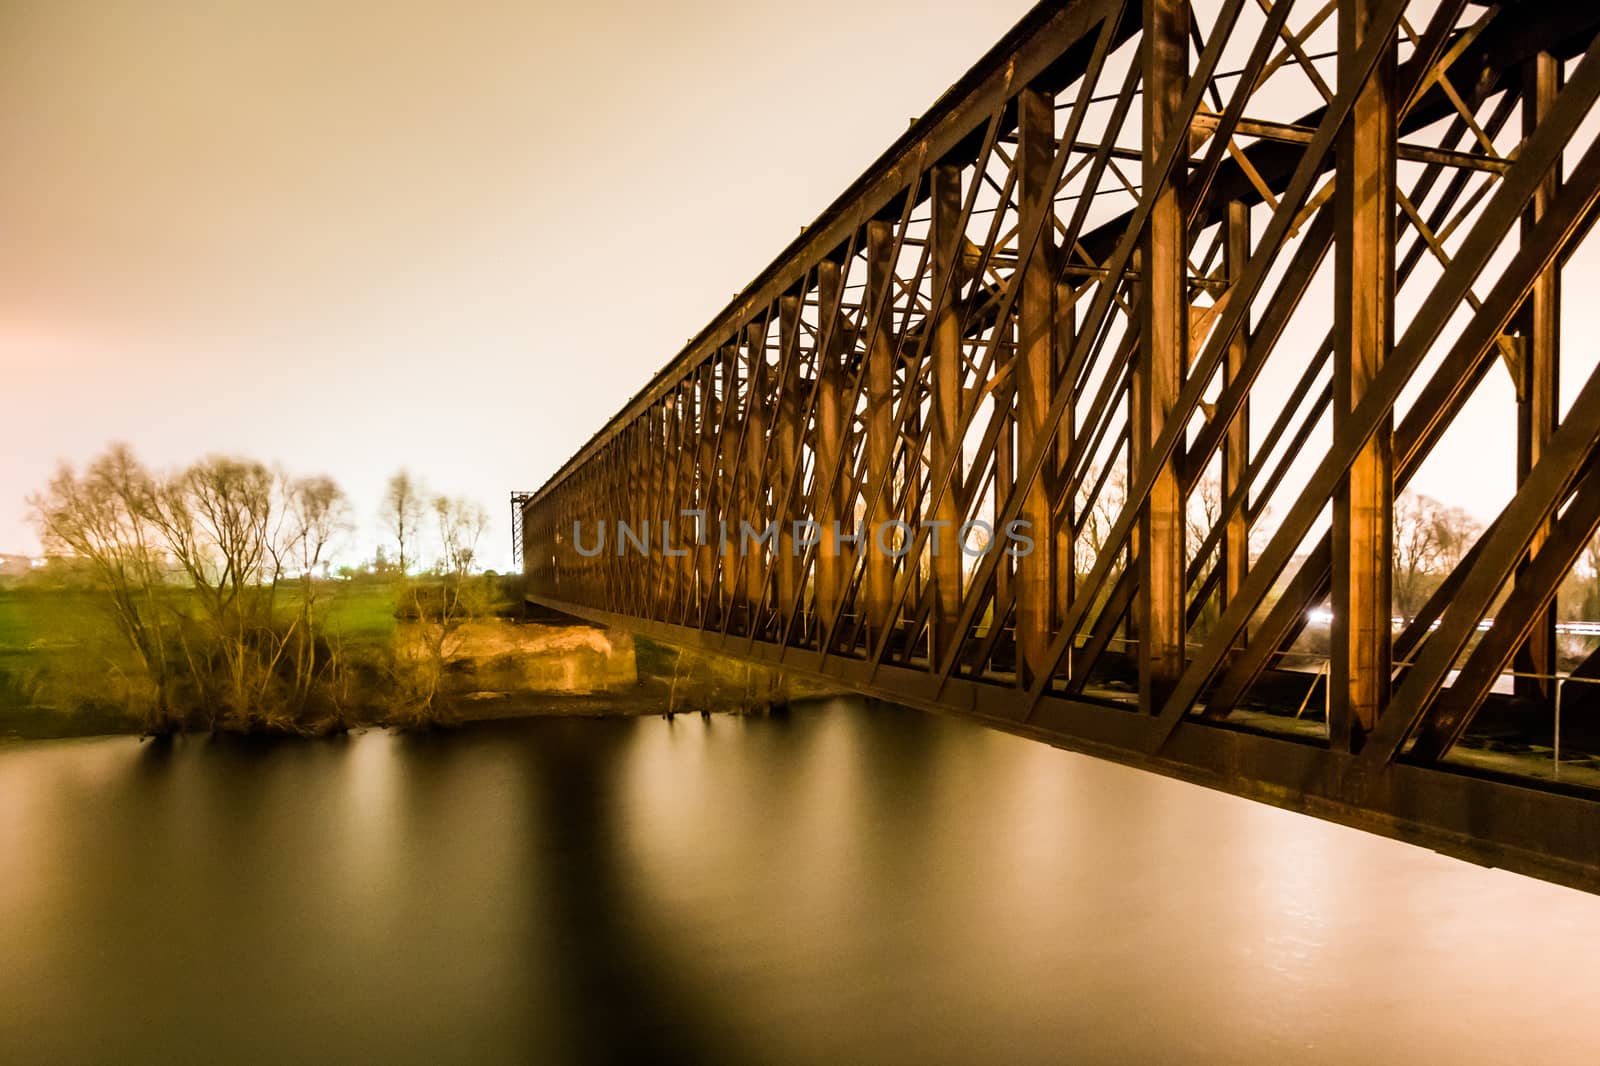 Old industrial railway railroad iron bridge in the night